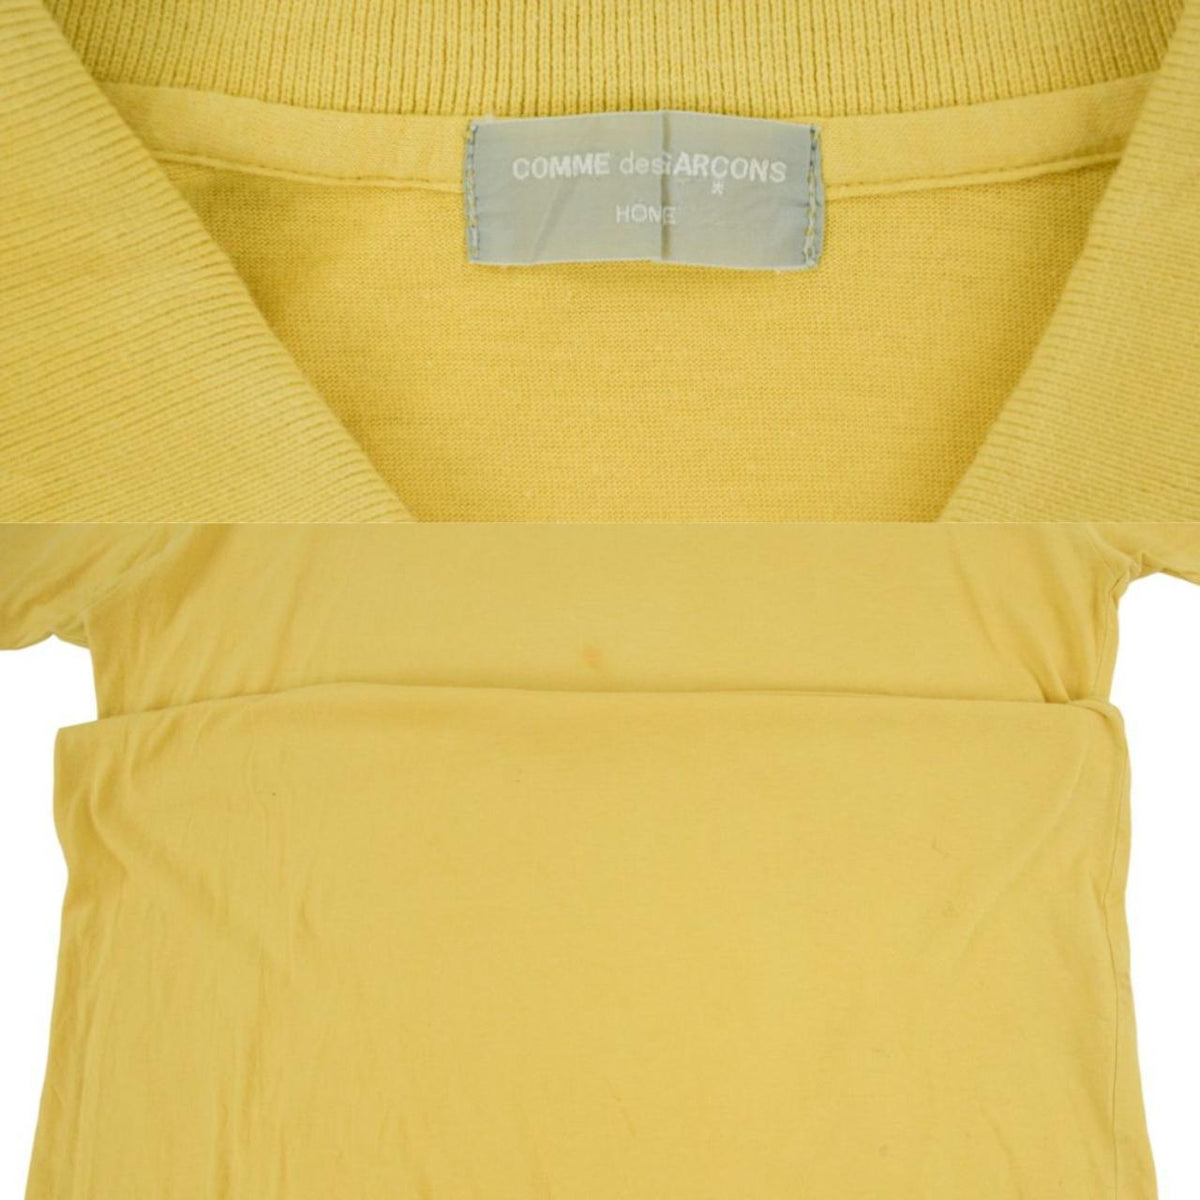 Vintage Comme des Garcons Polo T Shirt Size M